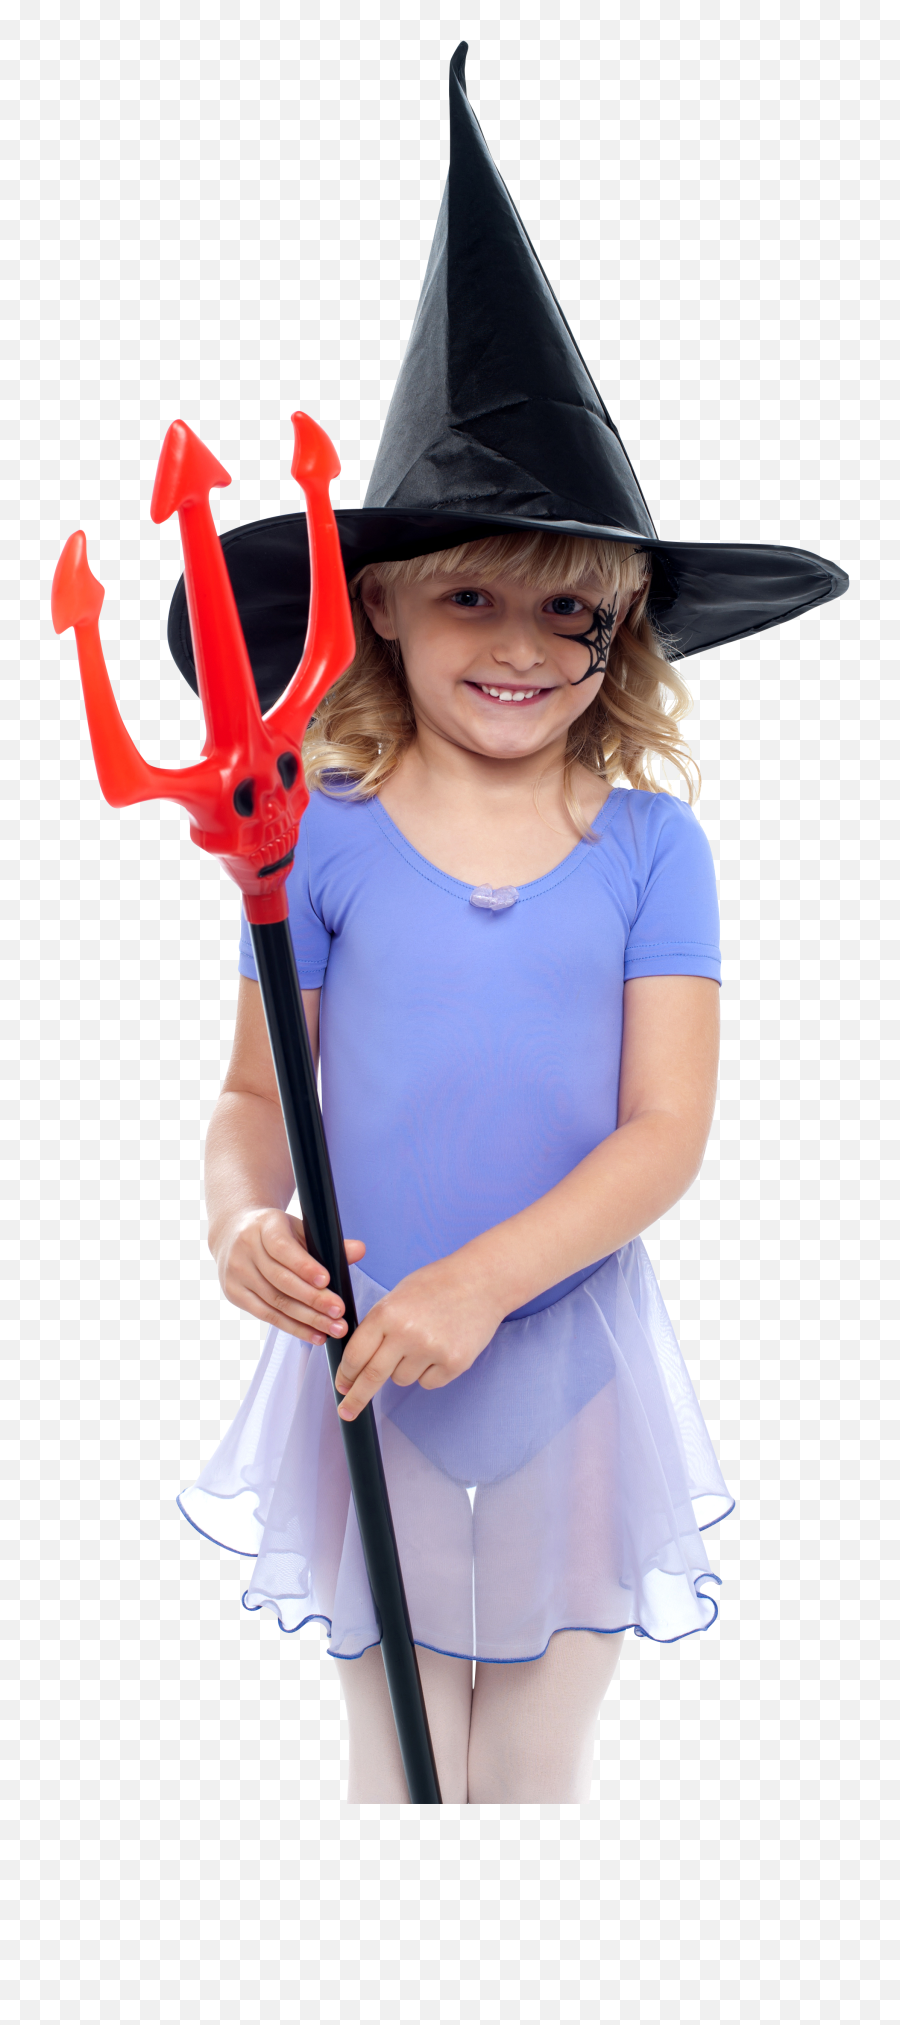 Child Girl Png Image For Free Download Emoji,Child Transparent Background